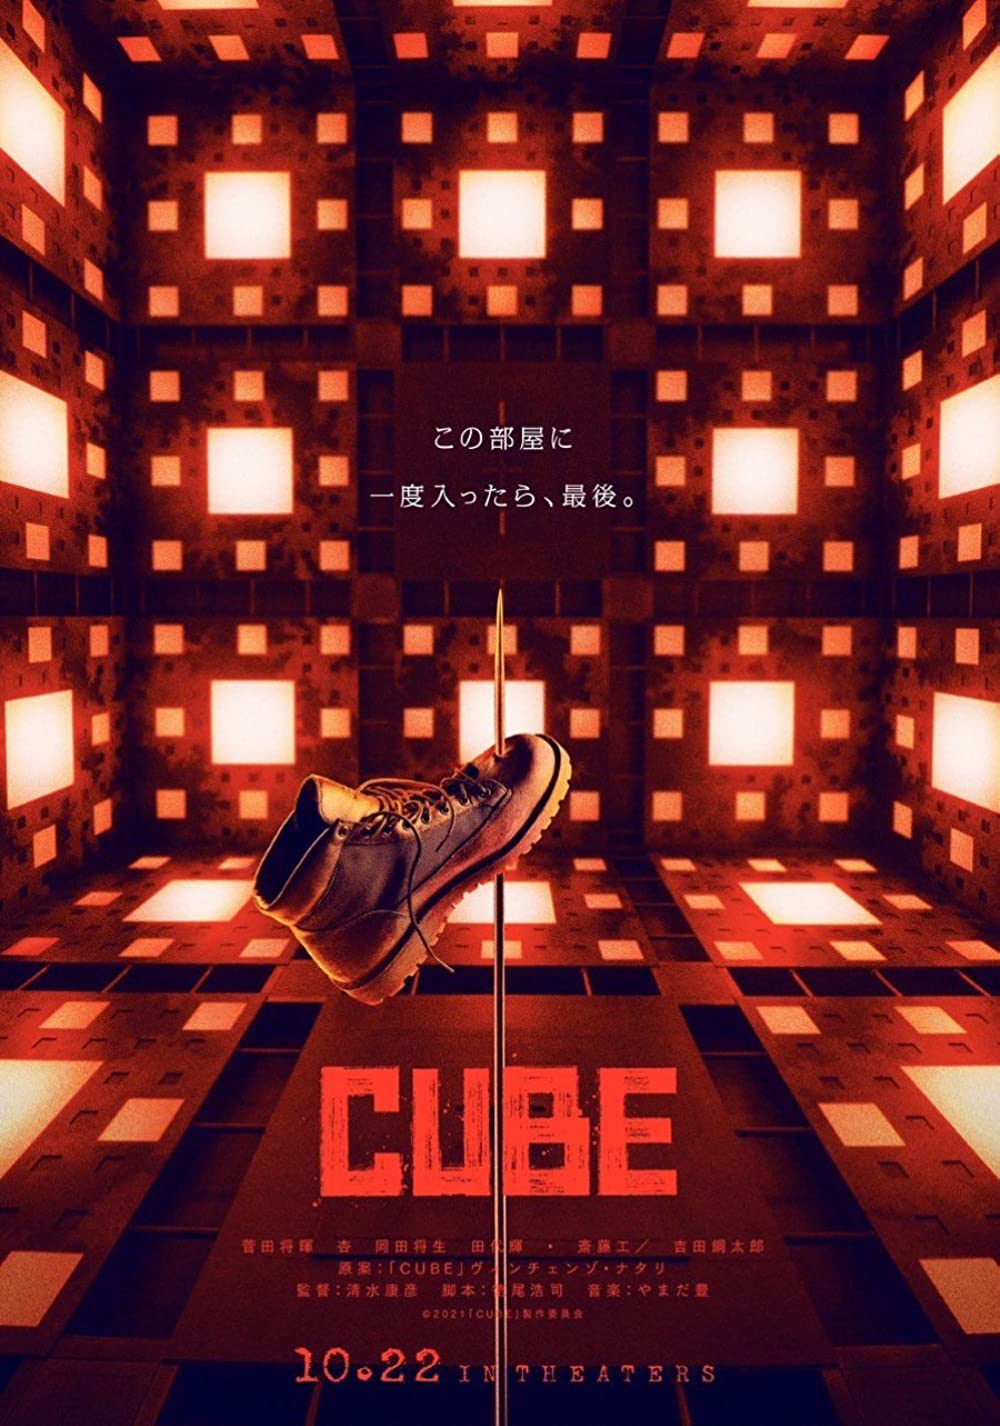 ดูหนังออนไลน์ฟรี Cube (2021) กล่องเกมมรณะ